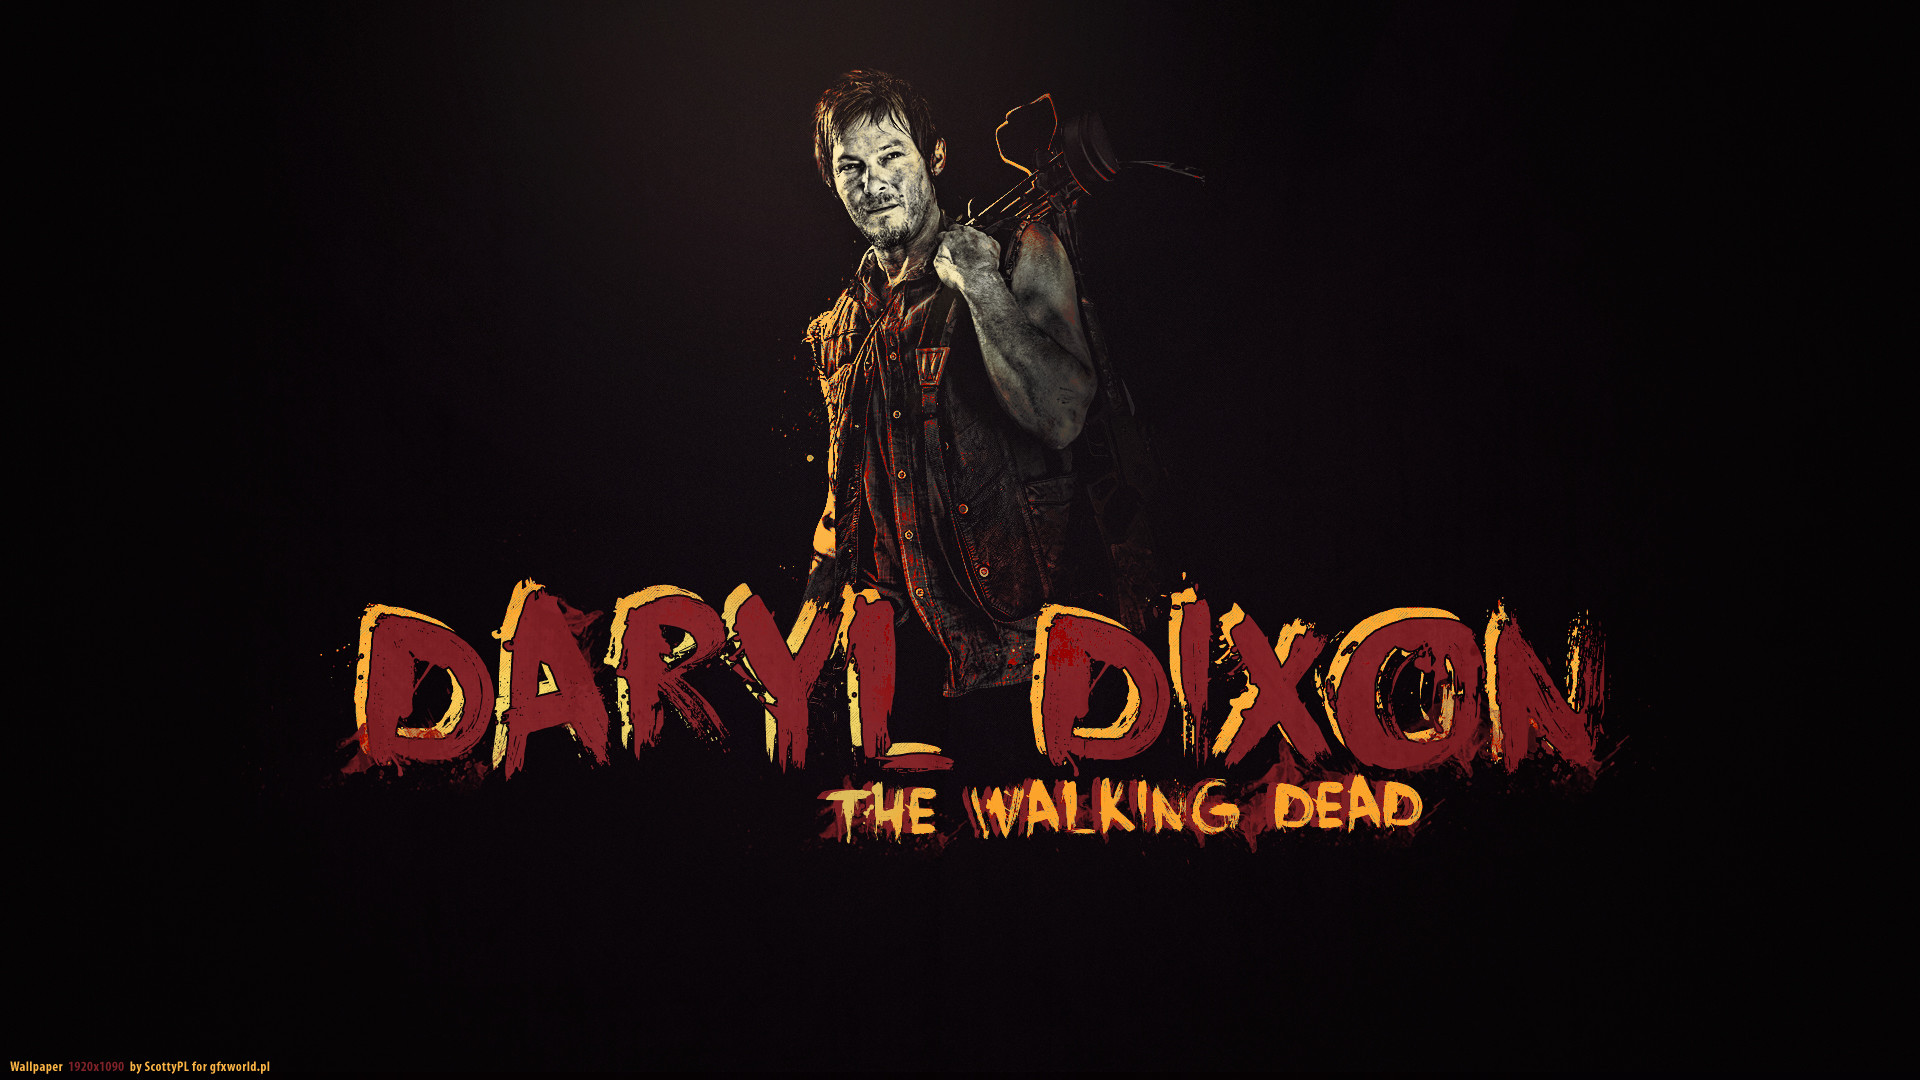 Walking Dead Daryl Wallpaper | … Dead Daryl Dixon The Walking Dead Norman  Reedus